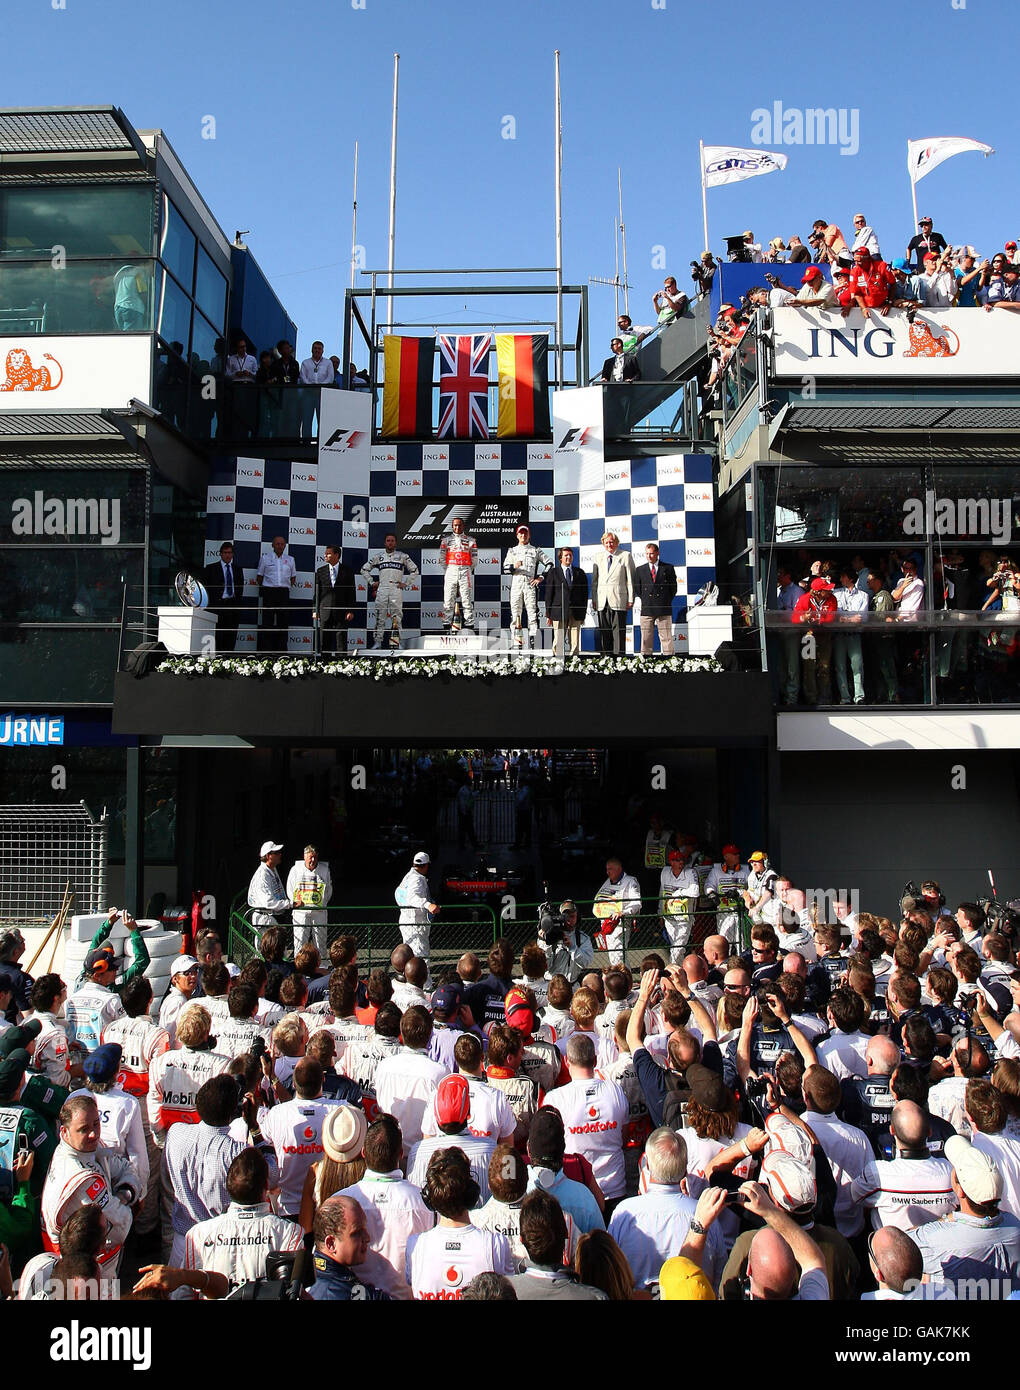 Formel-1-Autorennen - Großer Preis Von Australien - Rennen - Albert Park. McLaren Lewis Hamilton feiert seinen Sieg beim Formel 1, Australian, Grand Prix im Albert Park, Melbourne, Australien. Stockfoto